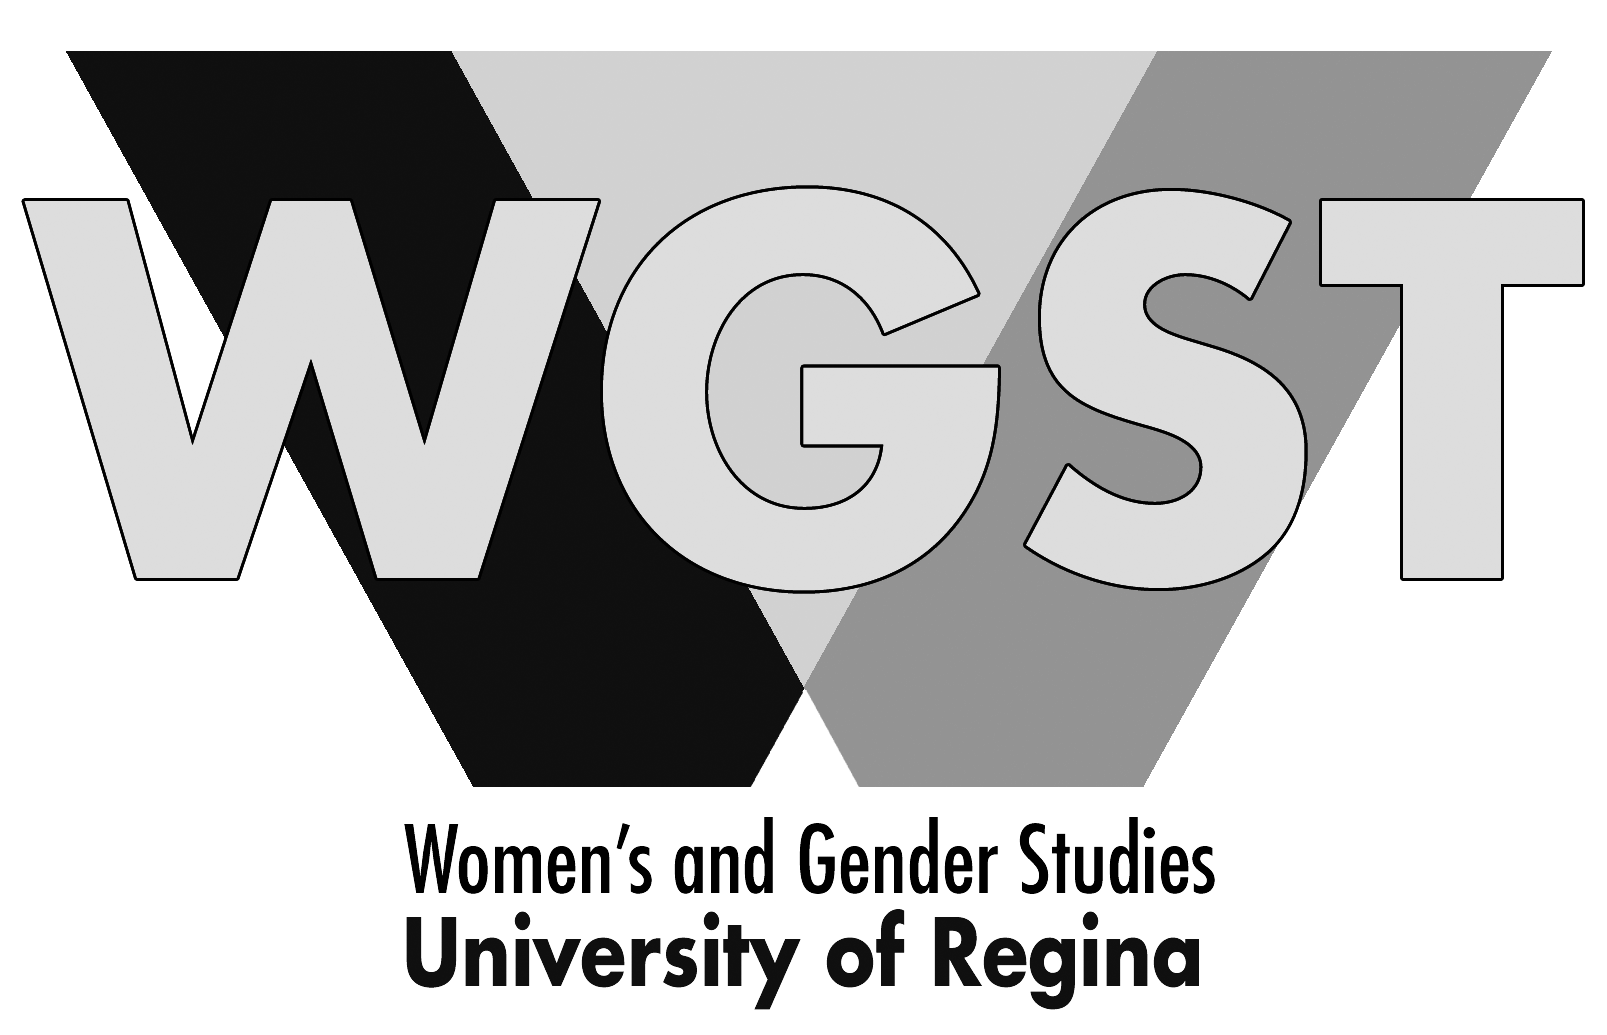 Department of Women's and Gender Studies - University of Regina